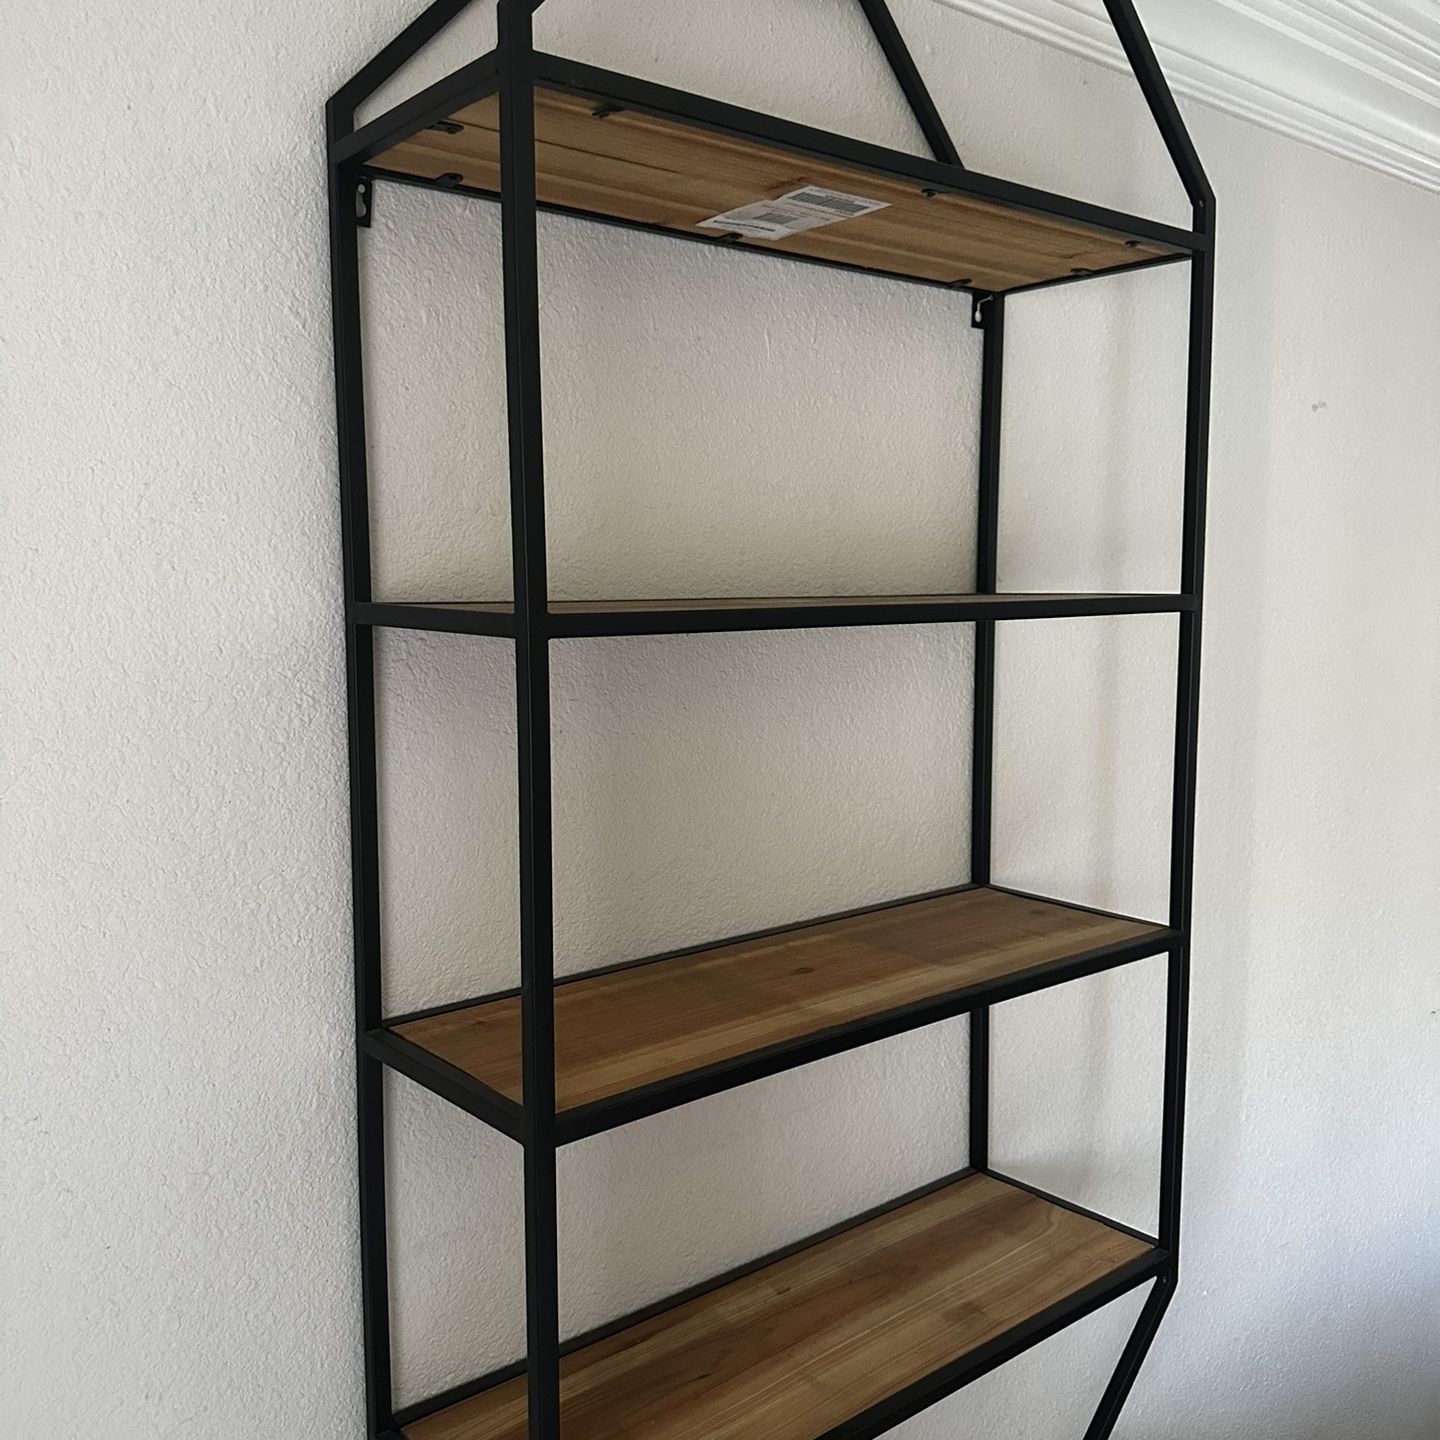 Modern Shelves